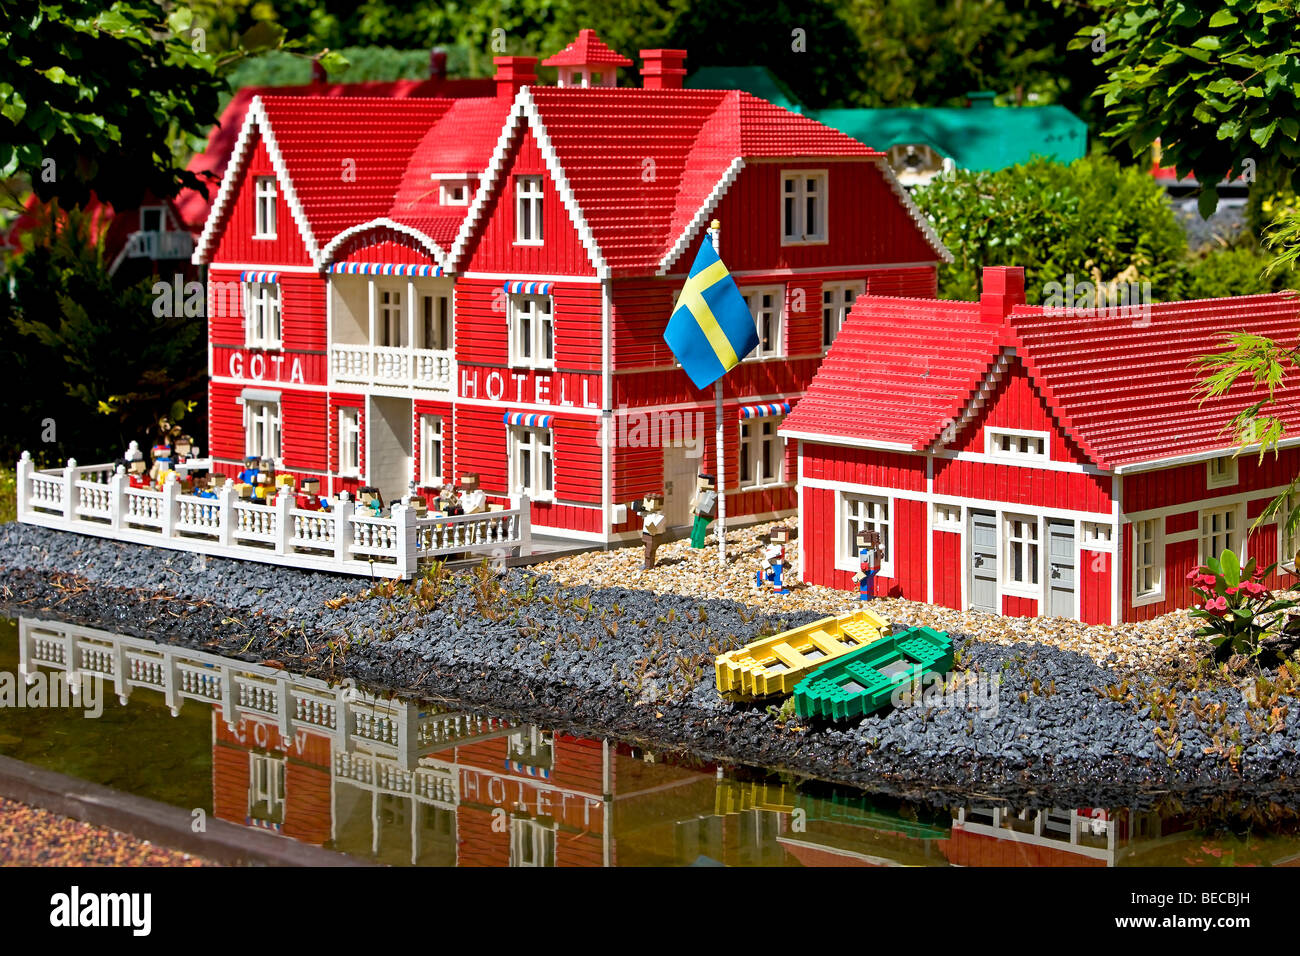 Das Goeta Hotel in Schweden hergestellt aus Lego-Steinen, Legoland,  Dänemark Stockfotografie - Alamy